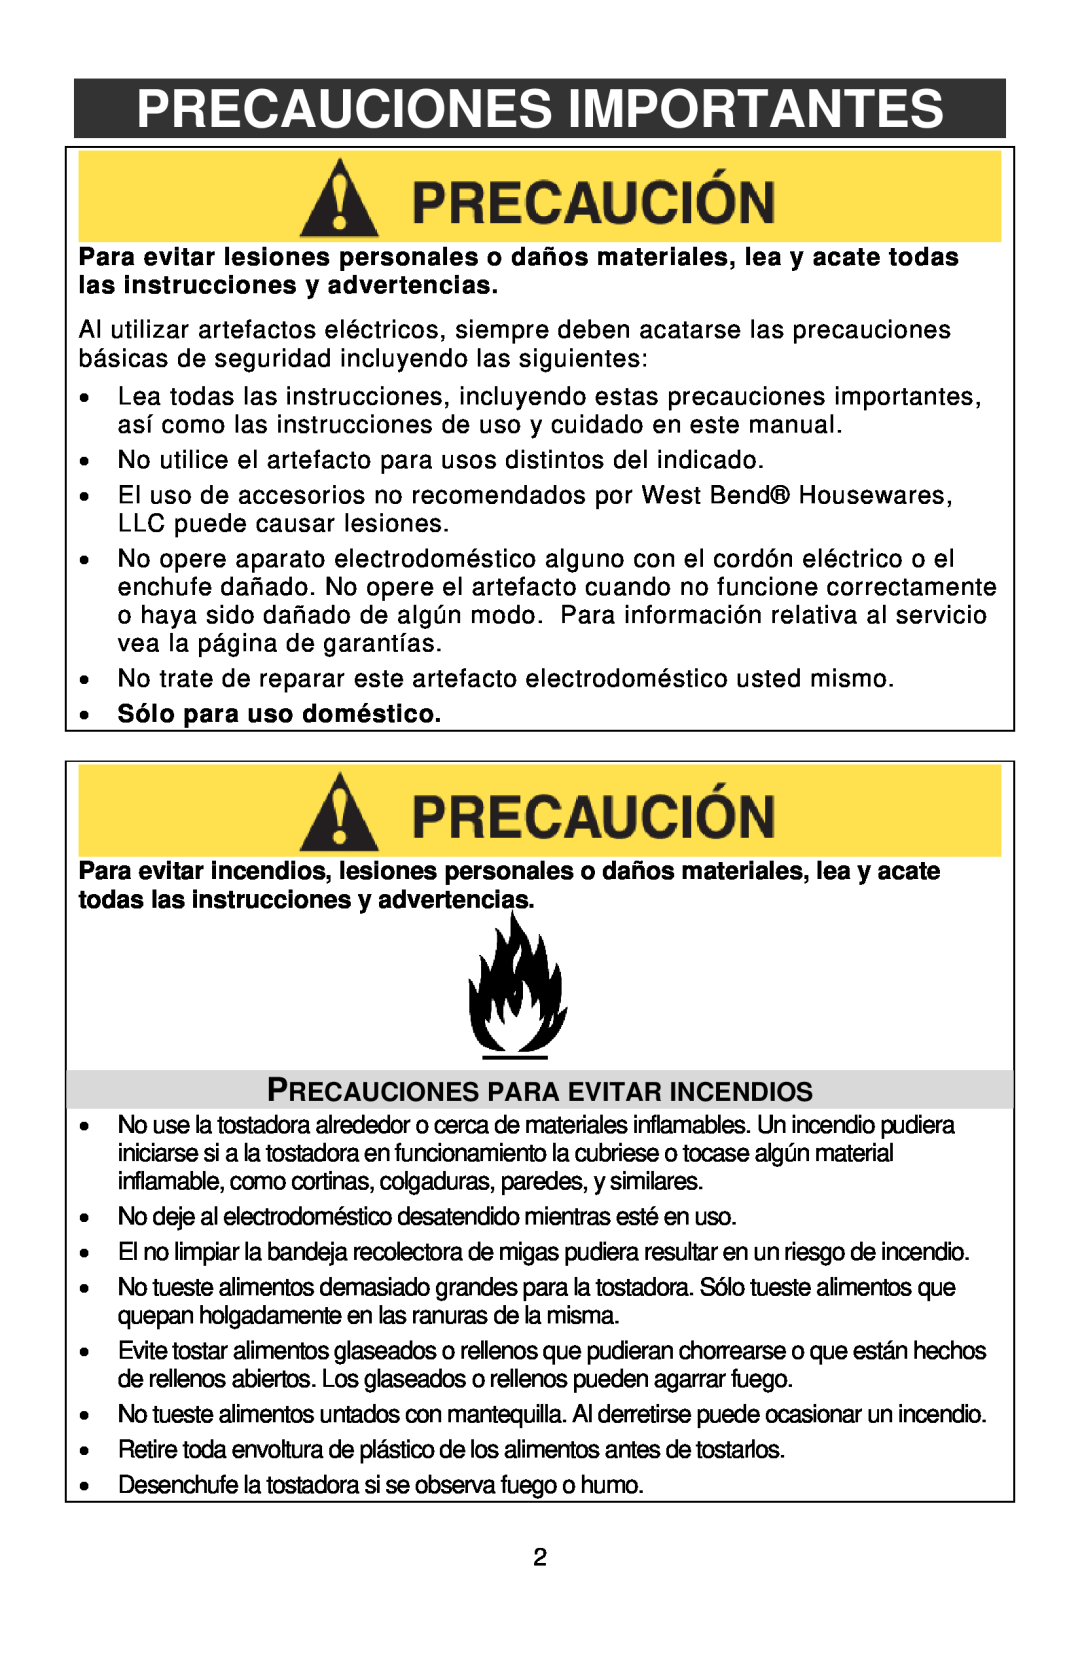 West Bend STAINLESS STEEL TOASTER instruction manual Precauciones Importantes, Precauciones Para Evitar Incendios 